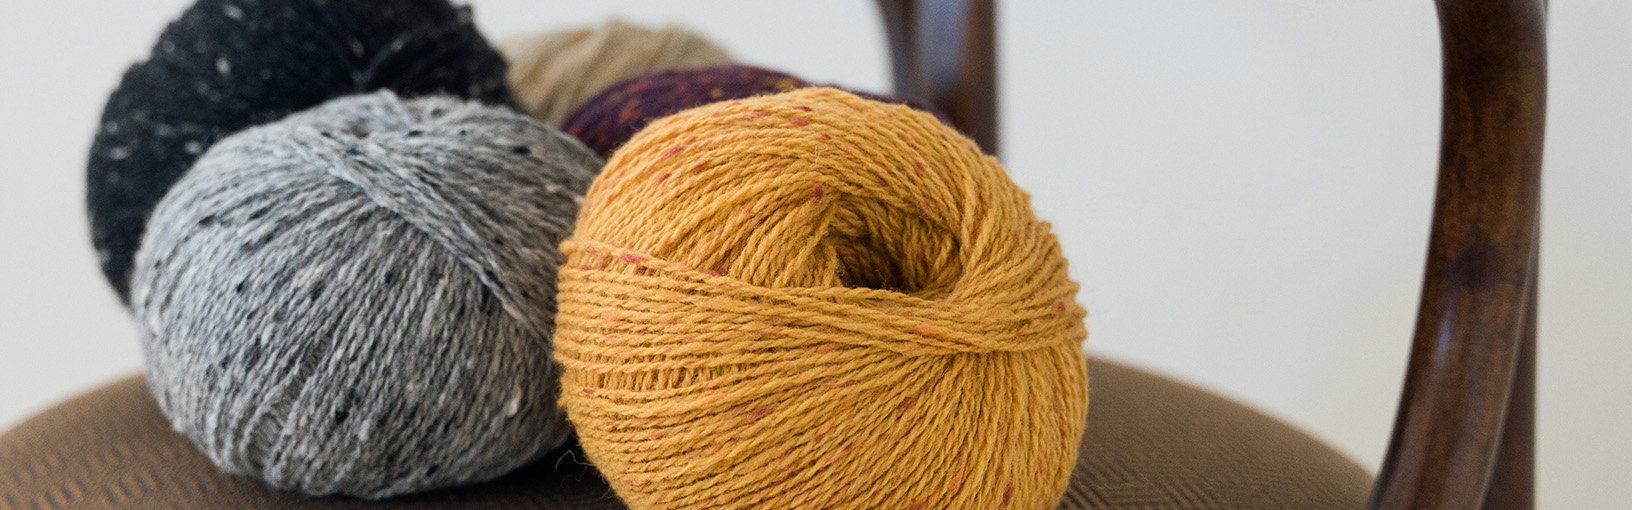 Hilos de alta calidad para tejer, crochet y fieltro Hilos Lana Grossa | Hilos calzetin | 4-ply (4 capas)